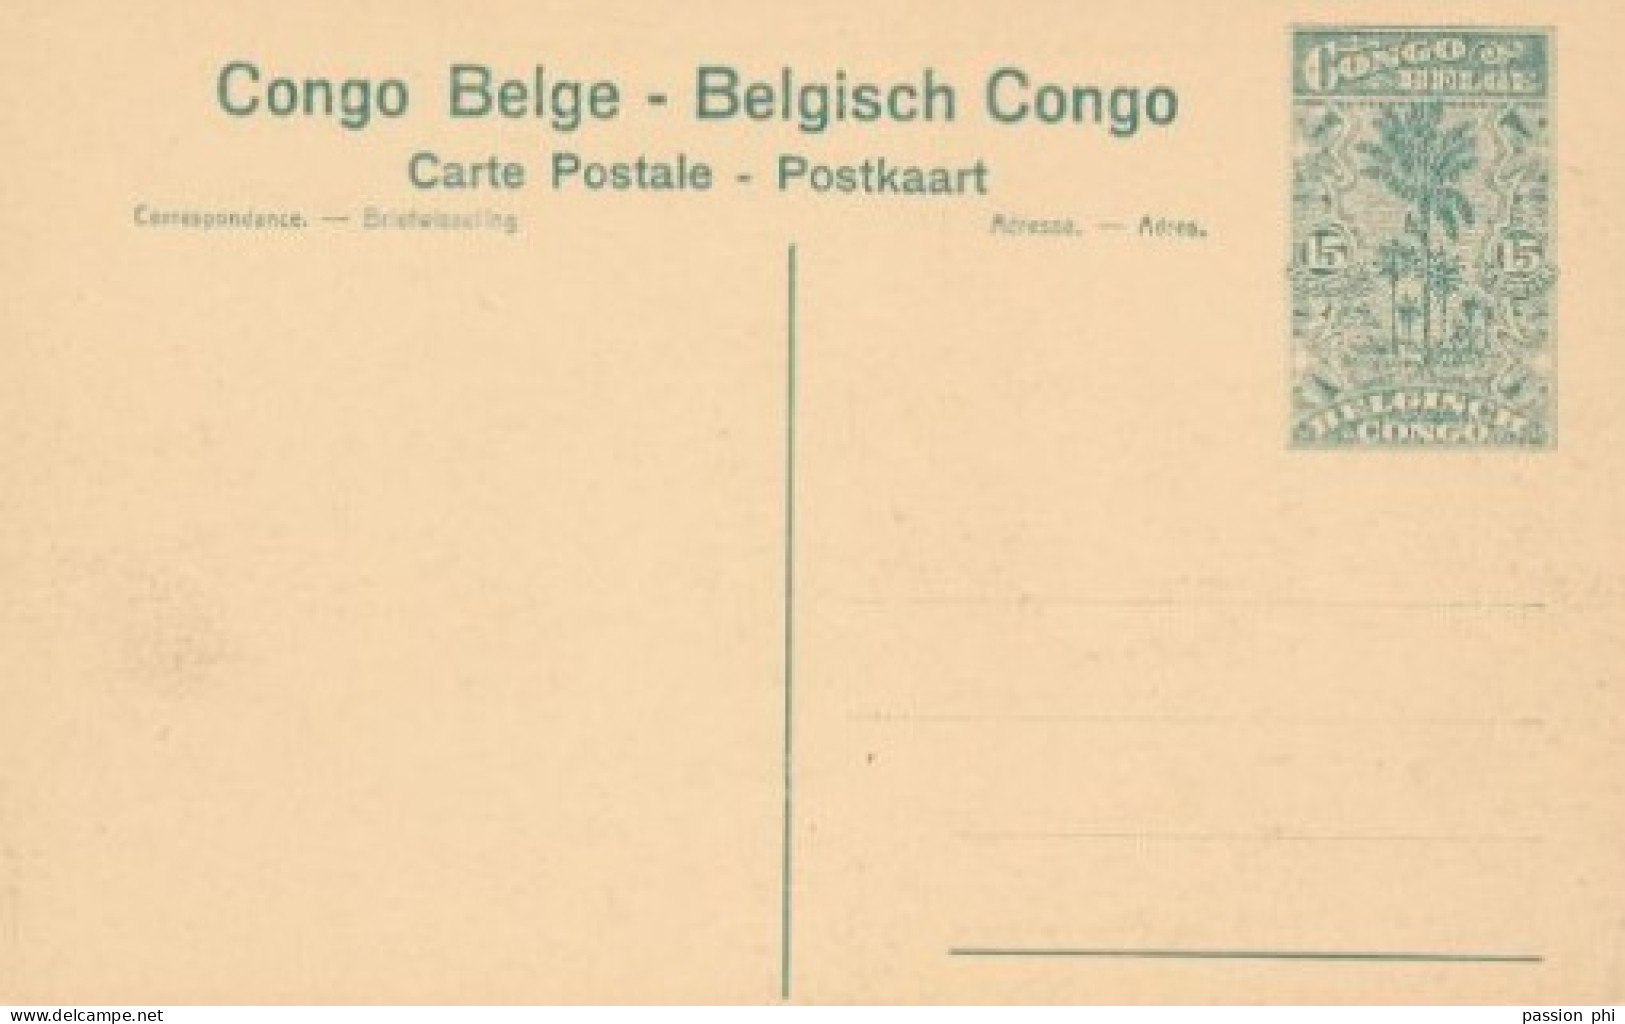 BELGIAN CONGO PPS SBEP 61 VIEW 115 UNUSED - Ganzsachen